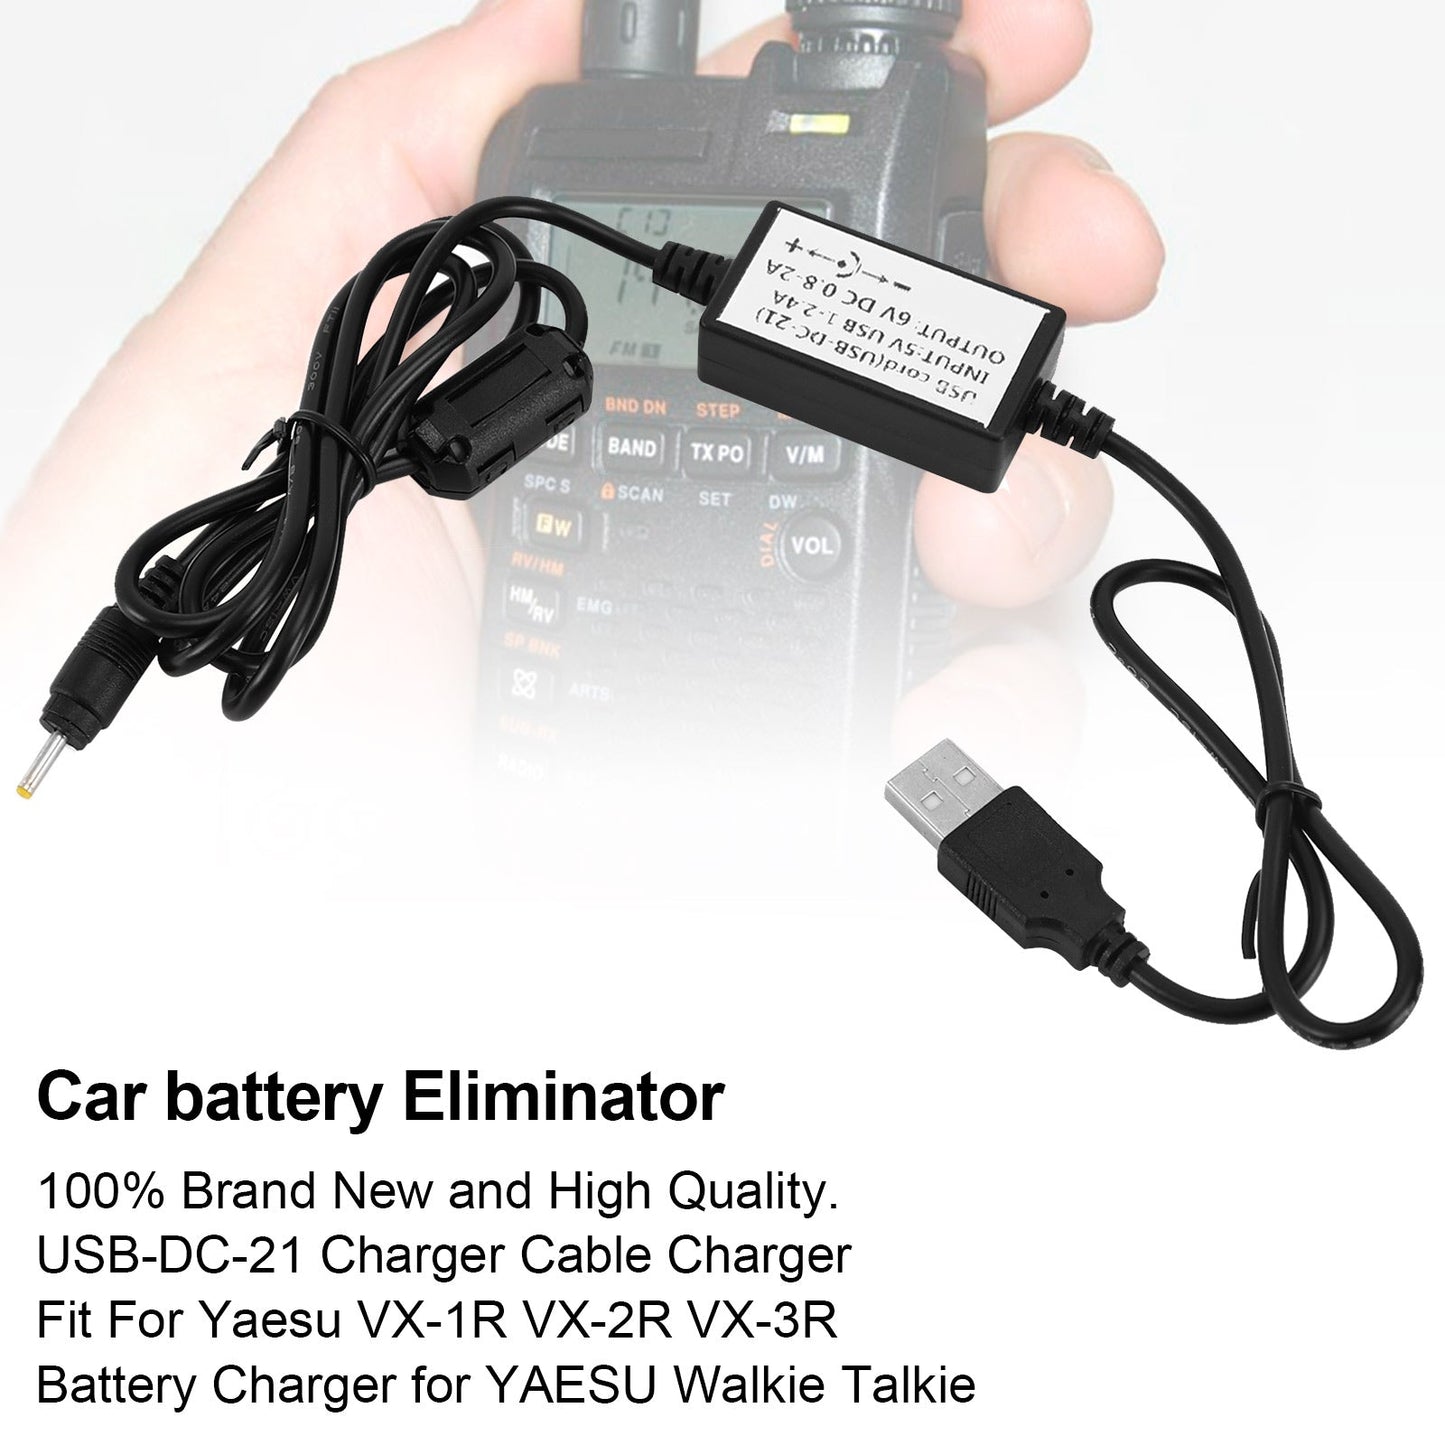 Chargeur de câble USB DC-21 pour VX-1R VX-2R VX-3R Chargeur de batterie pour talkie-walkie